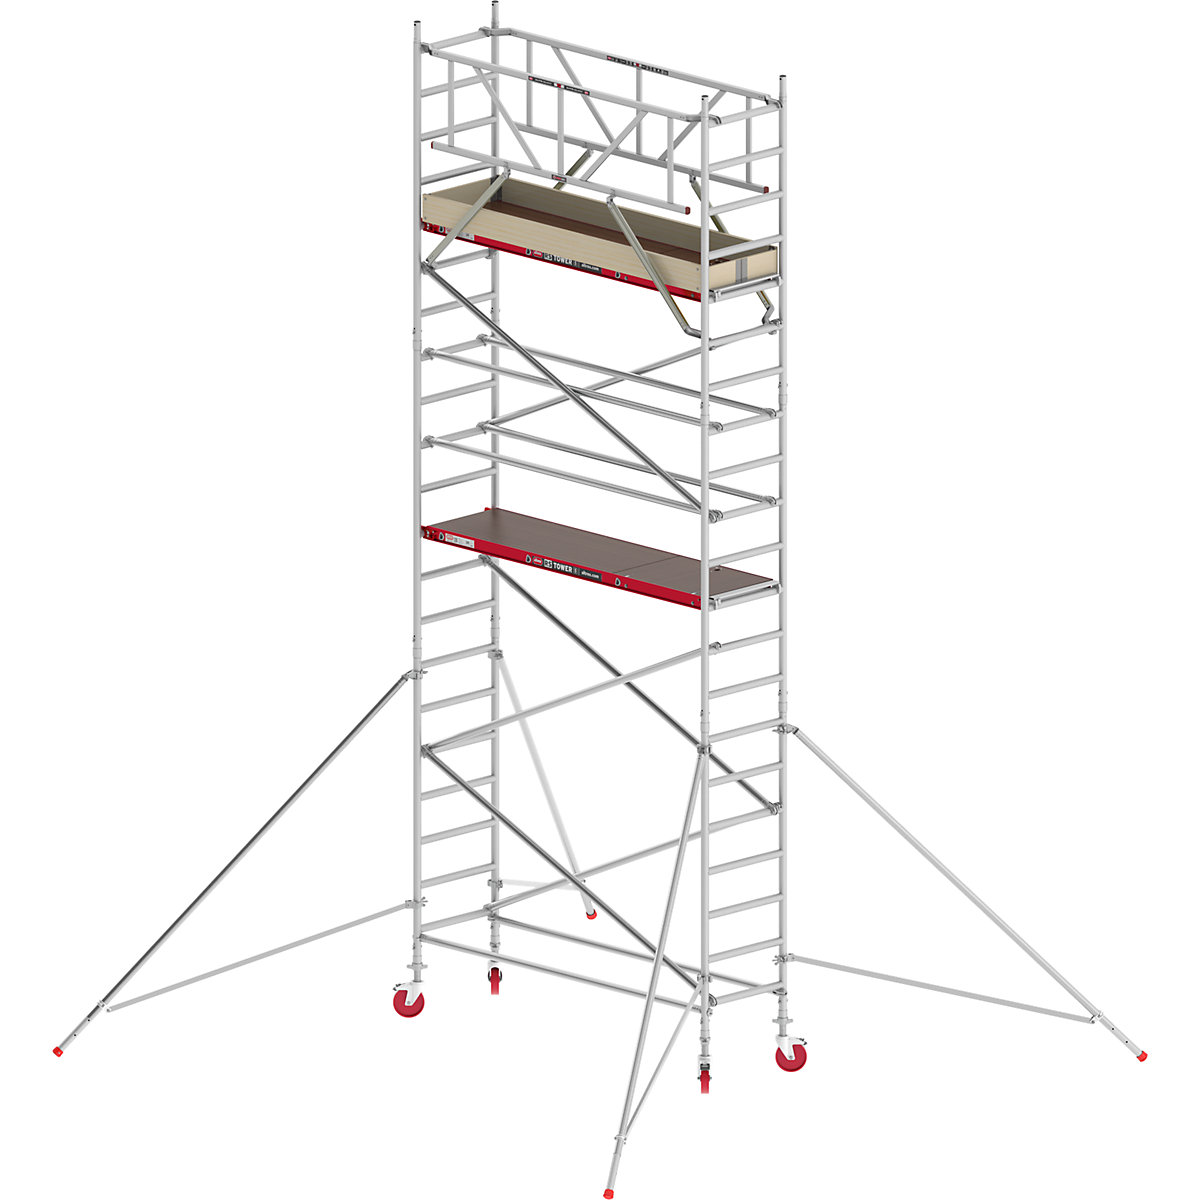 Trabattello mobile RS TOWER 41 stretto – Altrex, piattaforma in legno, lunghezza 1,85 m, altezza di lavoro 7,20 m-2